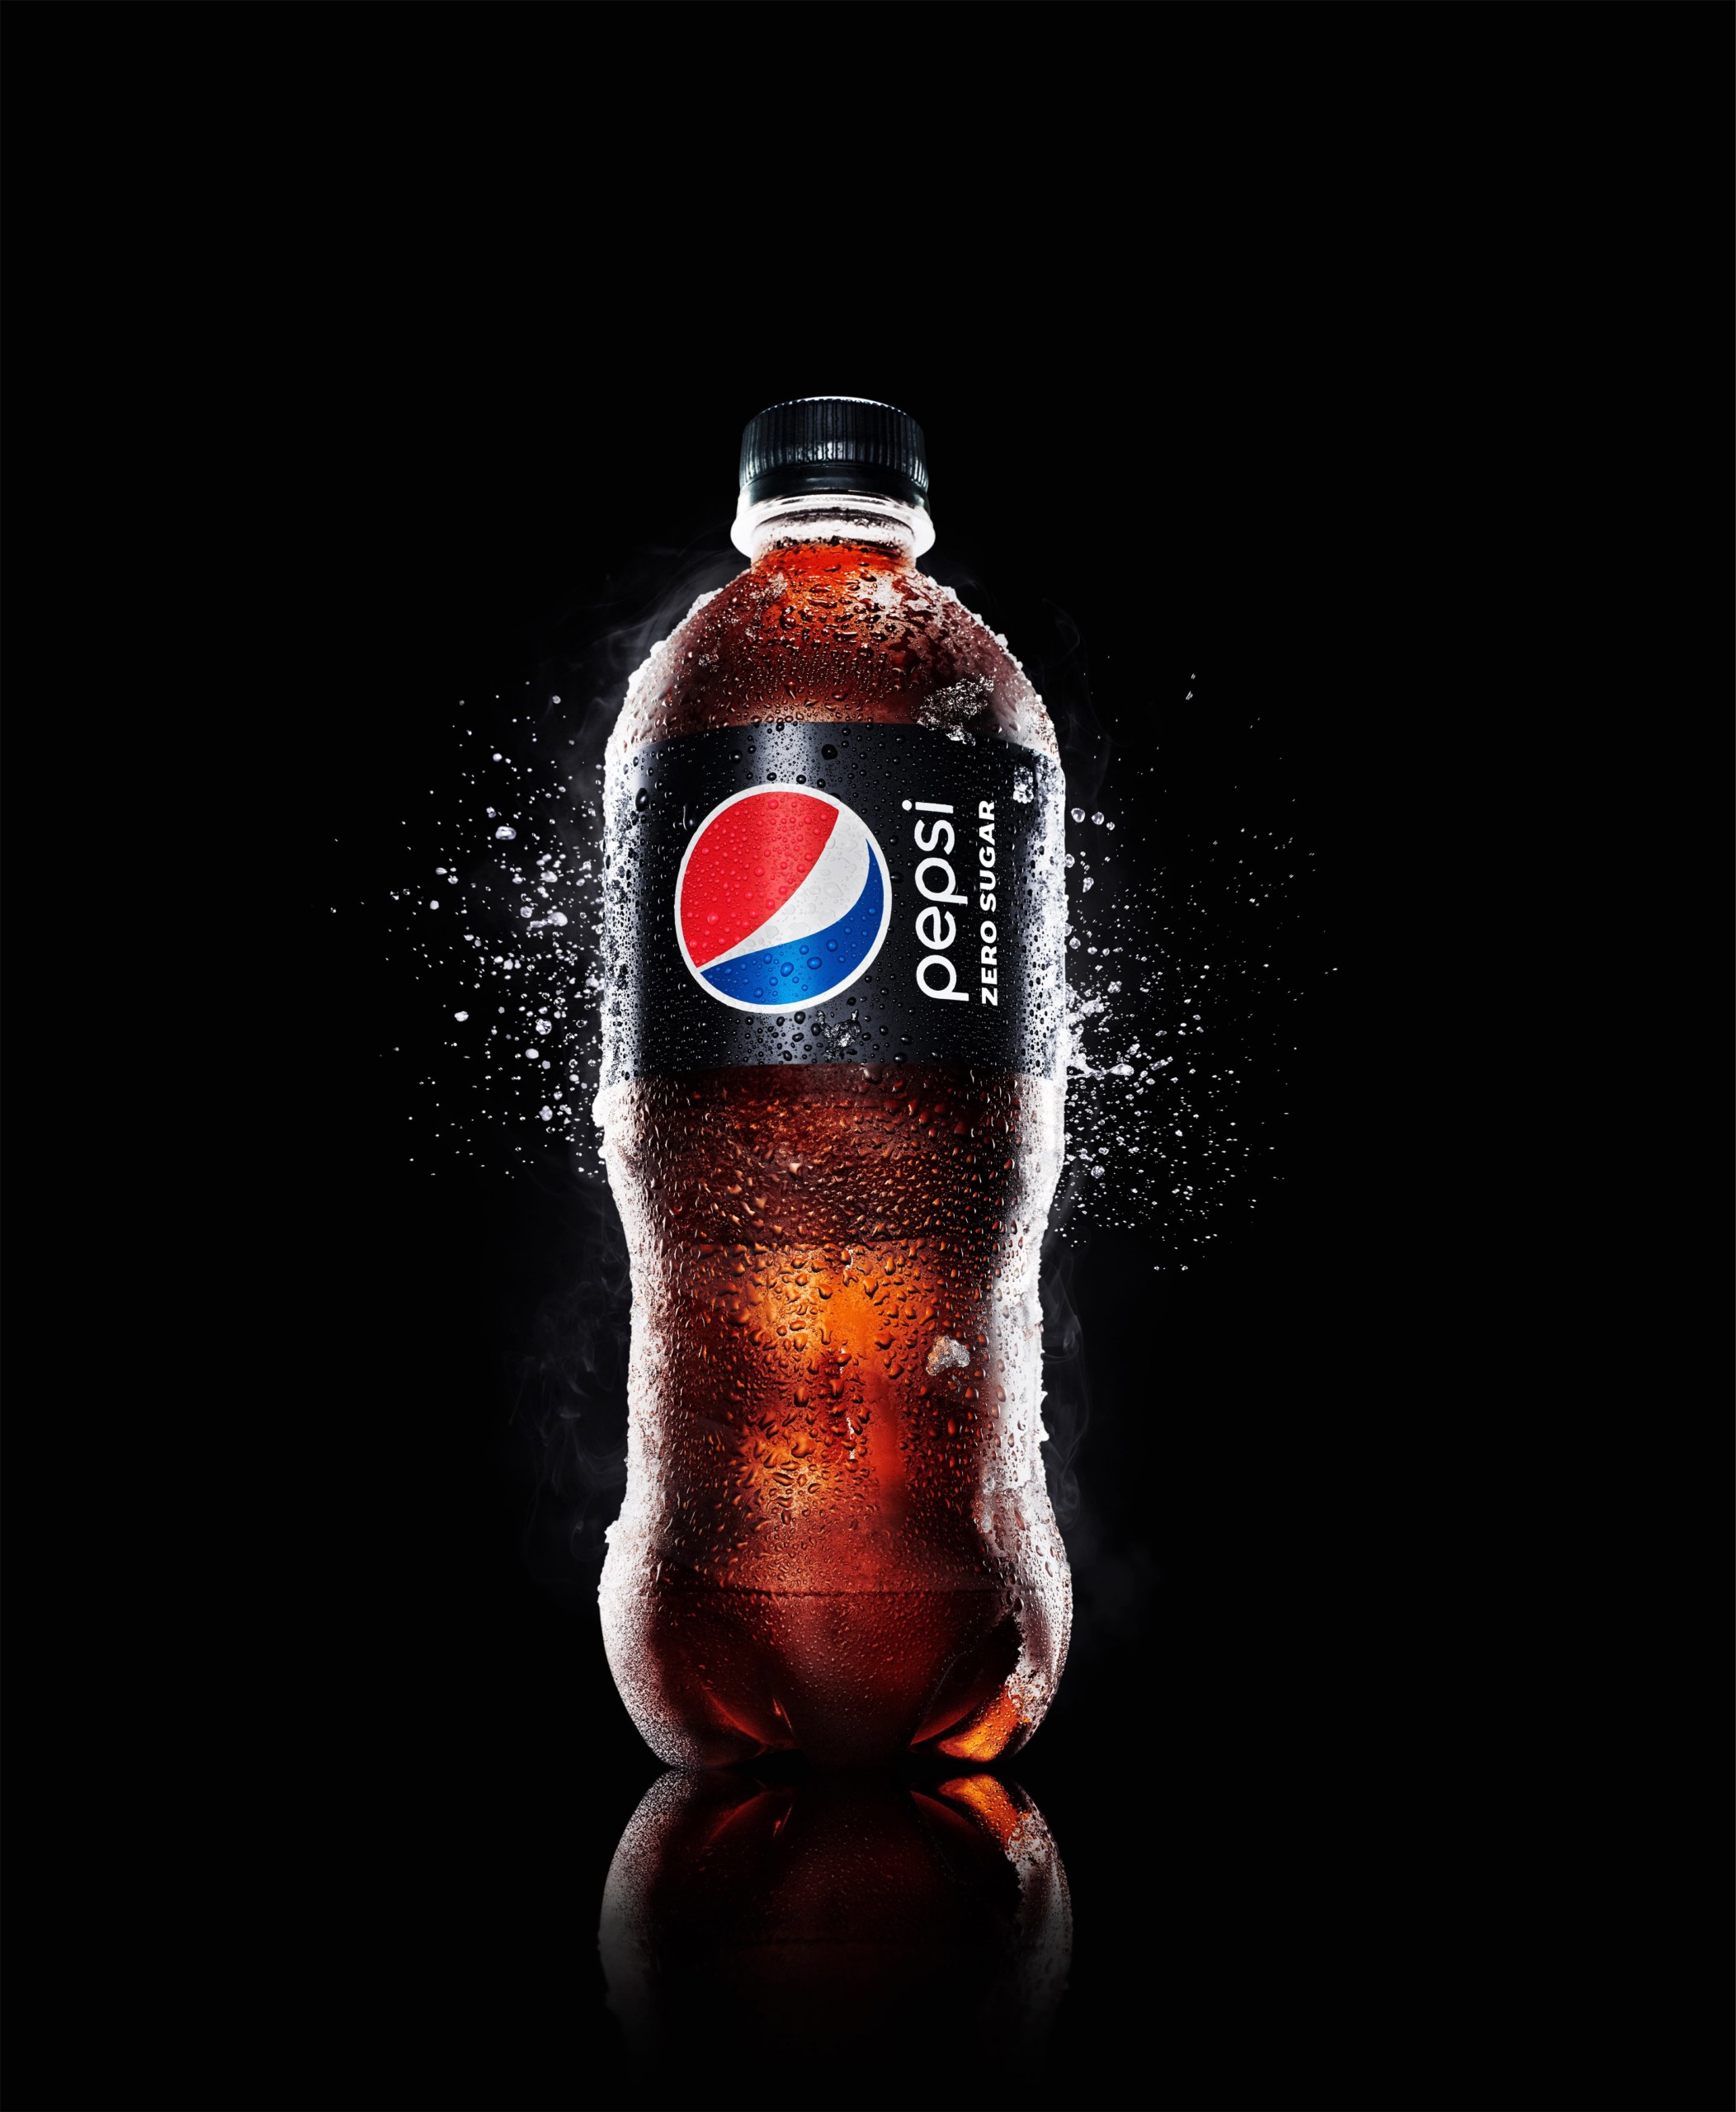 Snack - und Softdrink-Gigant schiebt sich ans Allzeithoch - Mit einem Hebelderivat lässt sich bei Pepsi auf die übergeordnete Trendfortsetzung spielen!